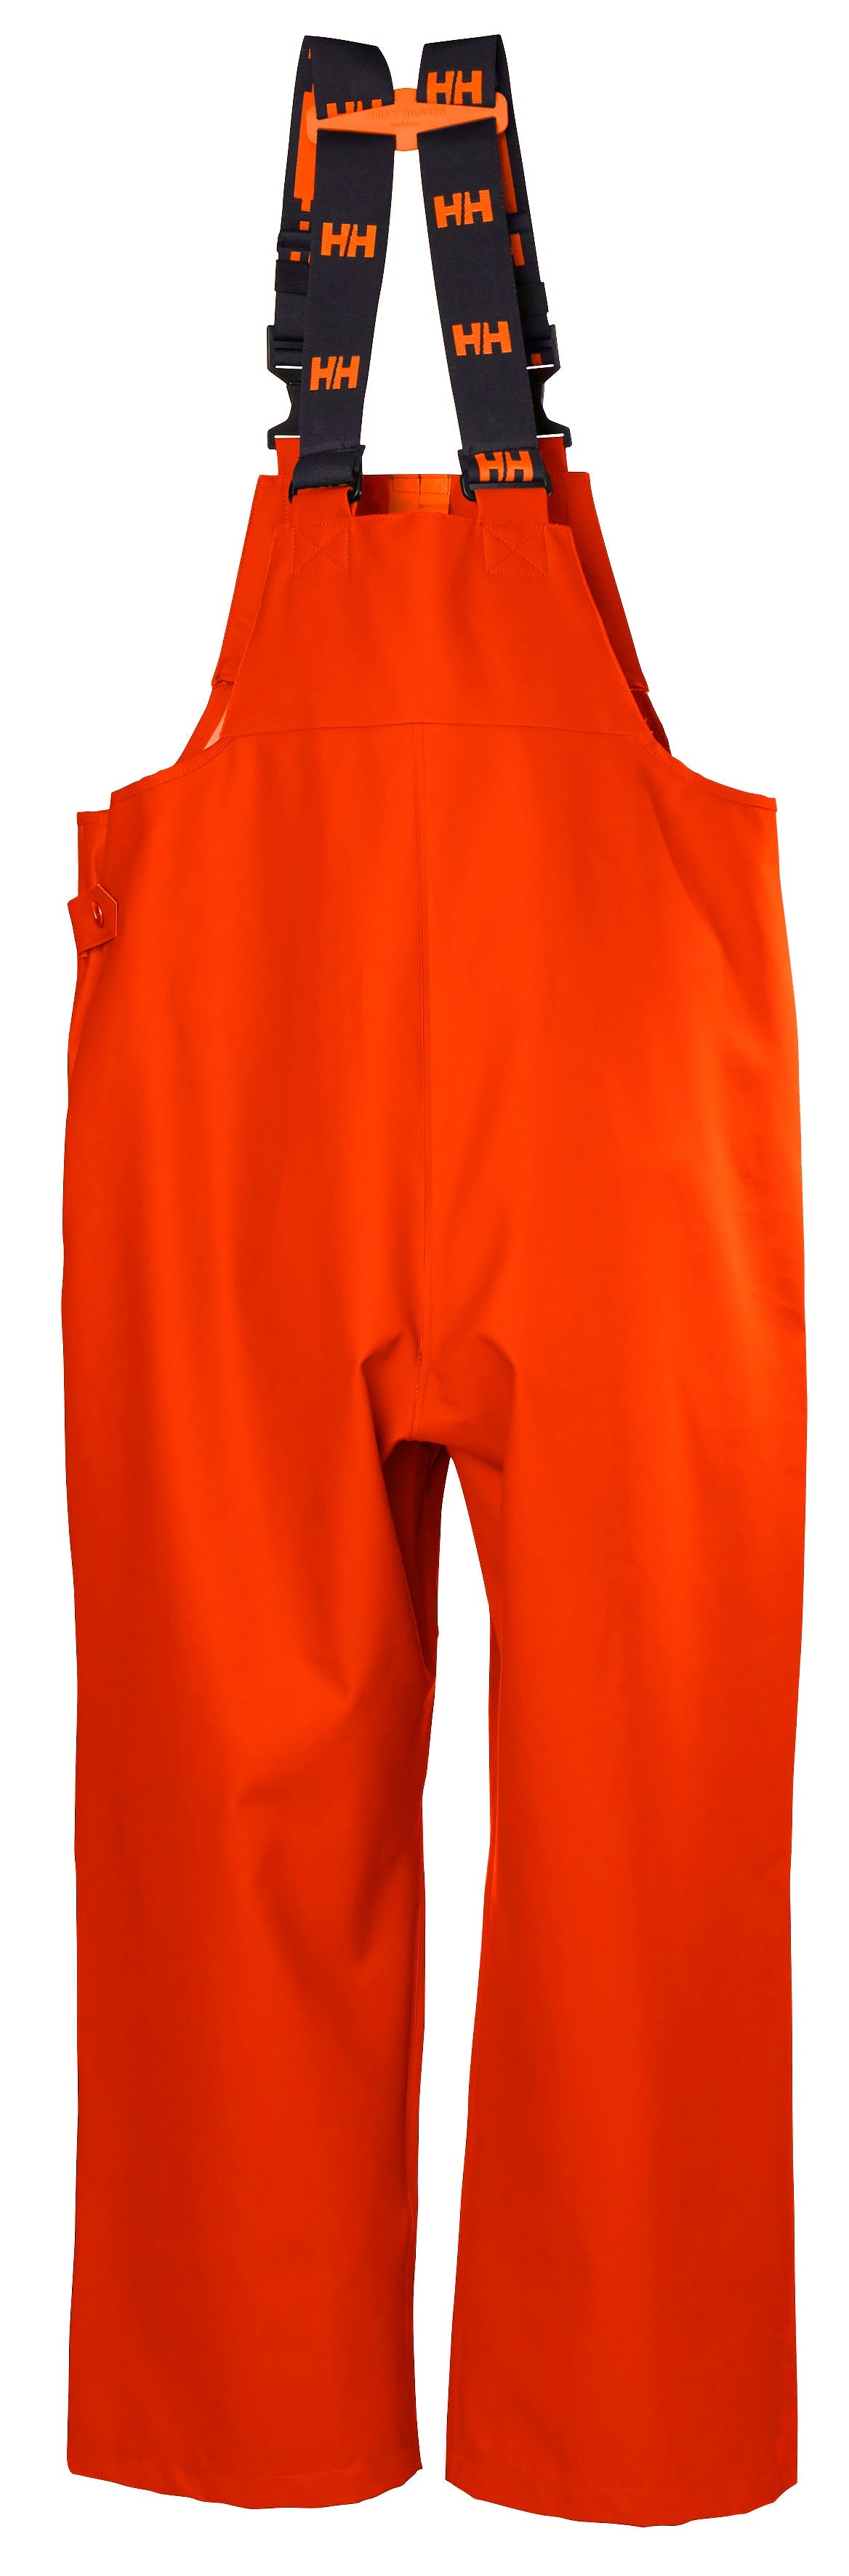  Helly-Hansen Workwear Storm Waterproof Bib Pants for